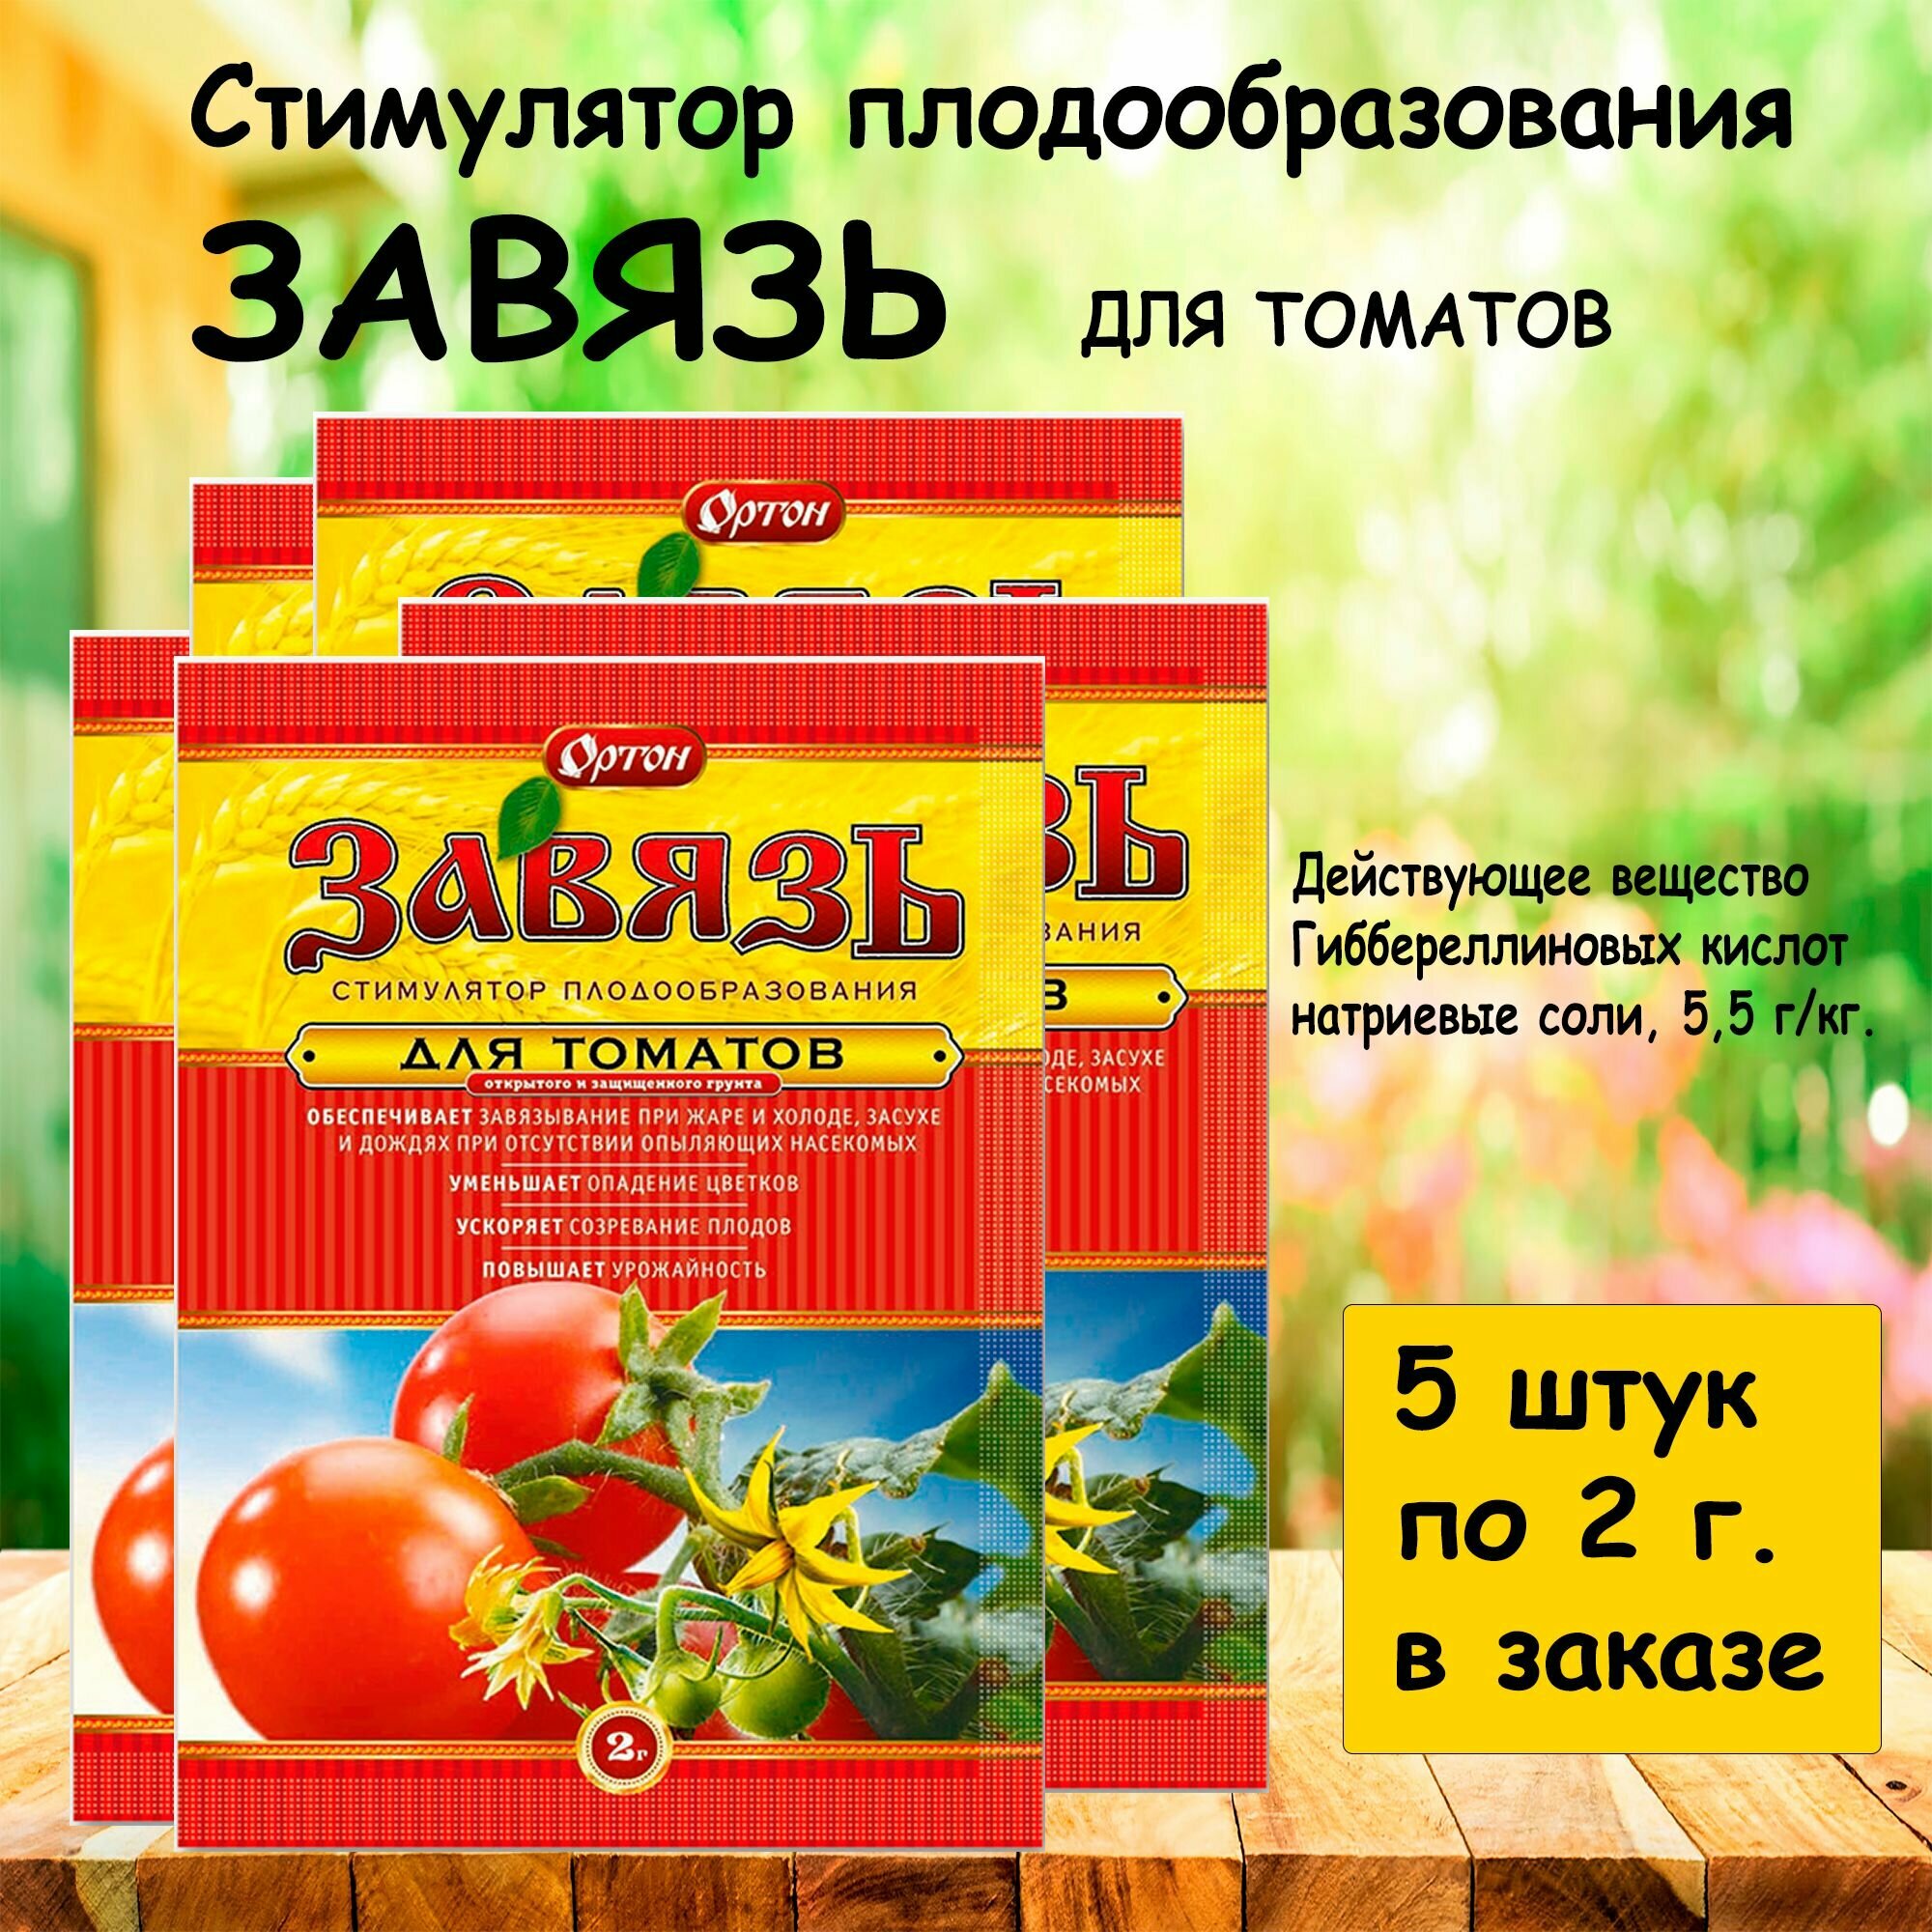 Завязь для плодообразования томатов 2г. 'Ортон' 5 штук в заказе.